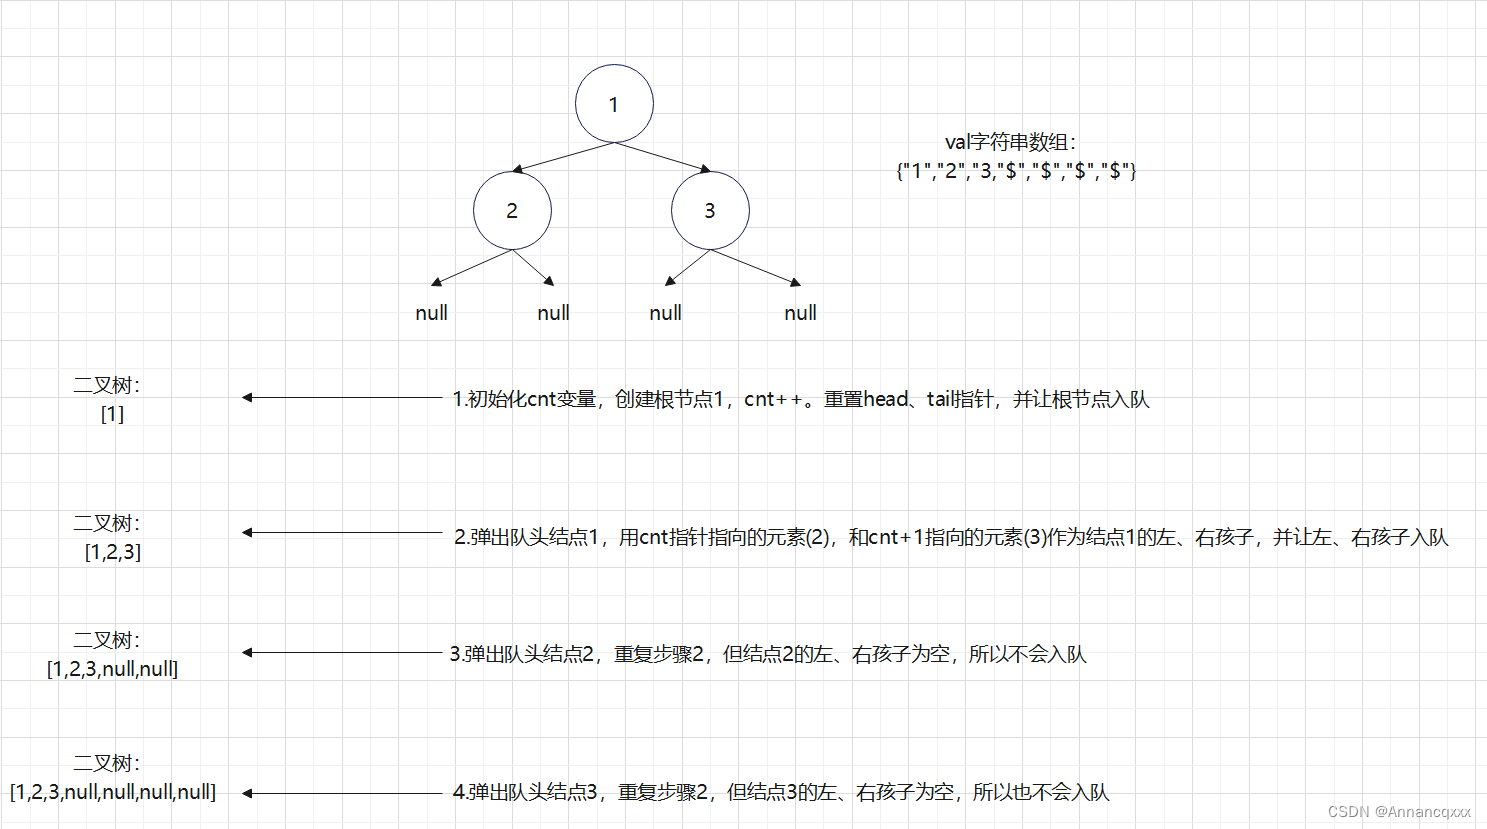 【序列化】概念及二叉树序列化、反序列化的两种方式